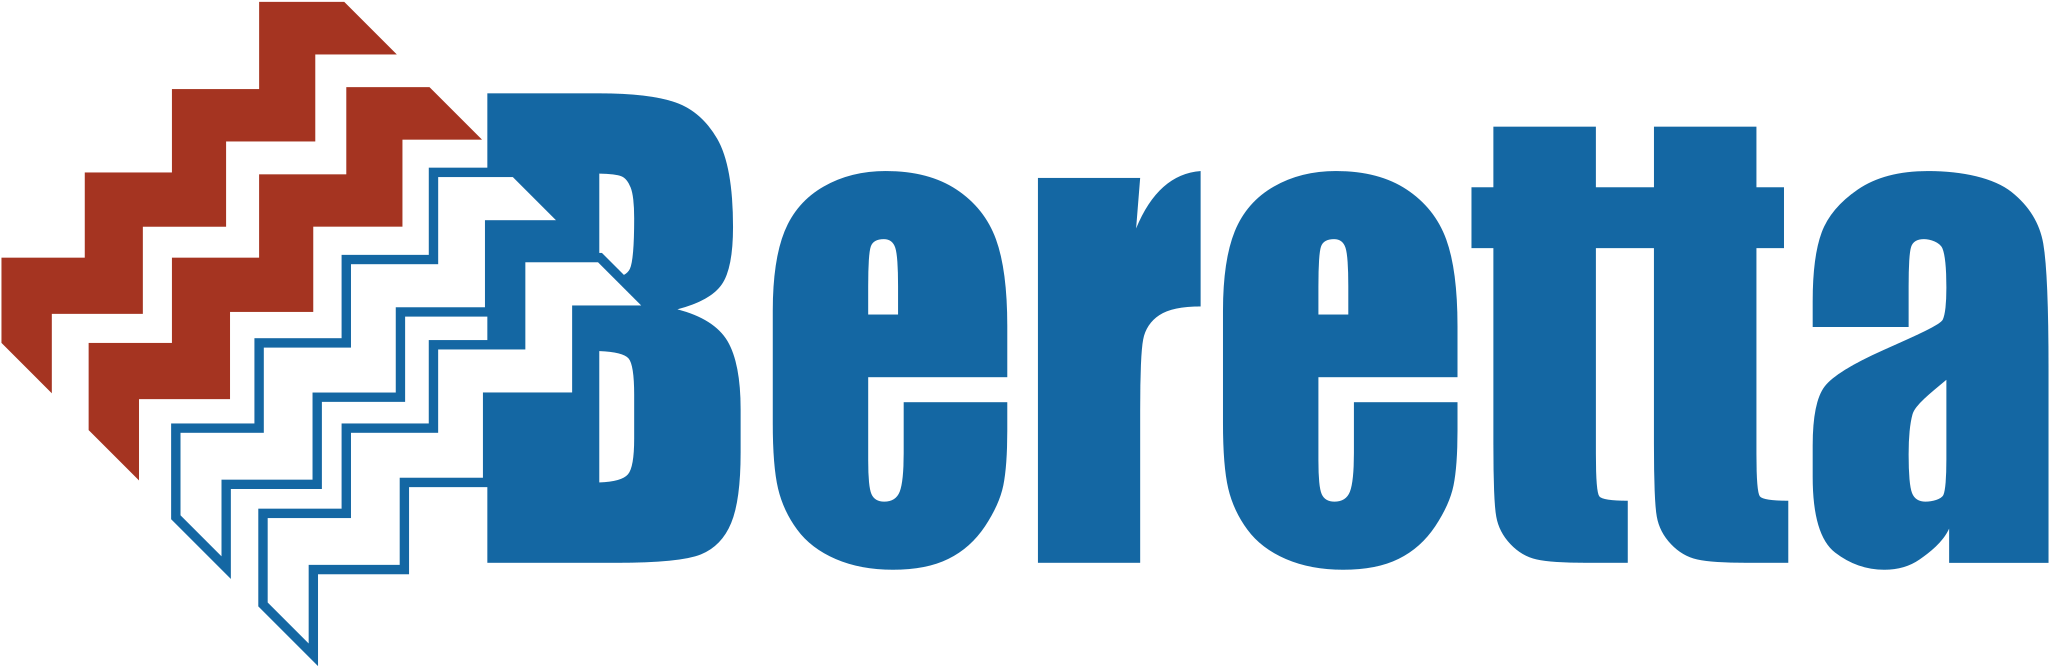 Beretta 05 Logo Png Transparent Clipart (2400x2400), Png Download